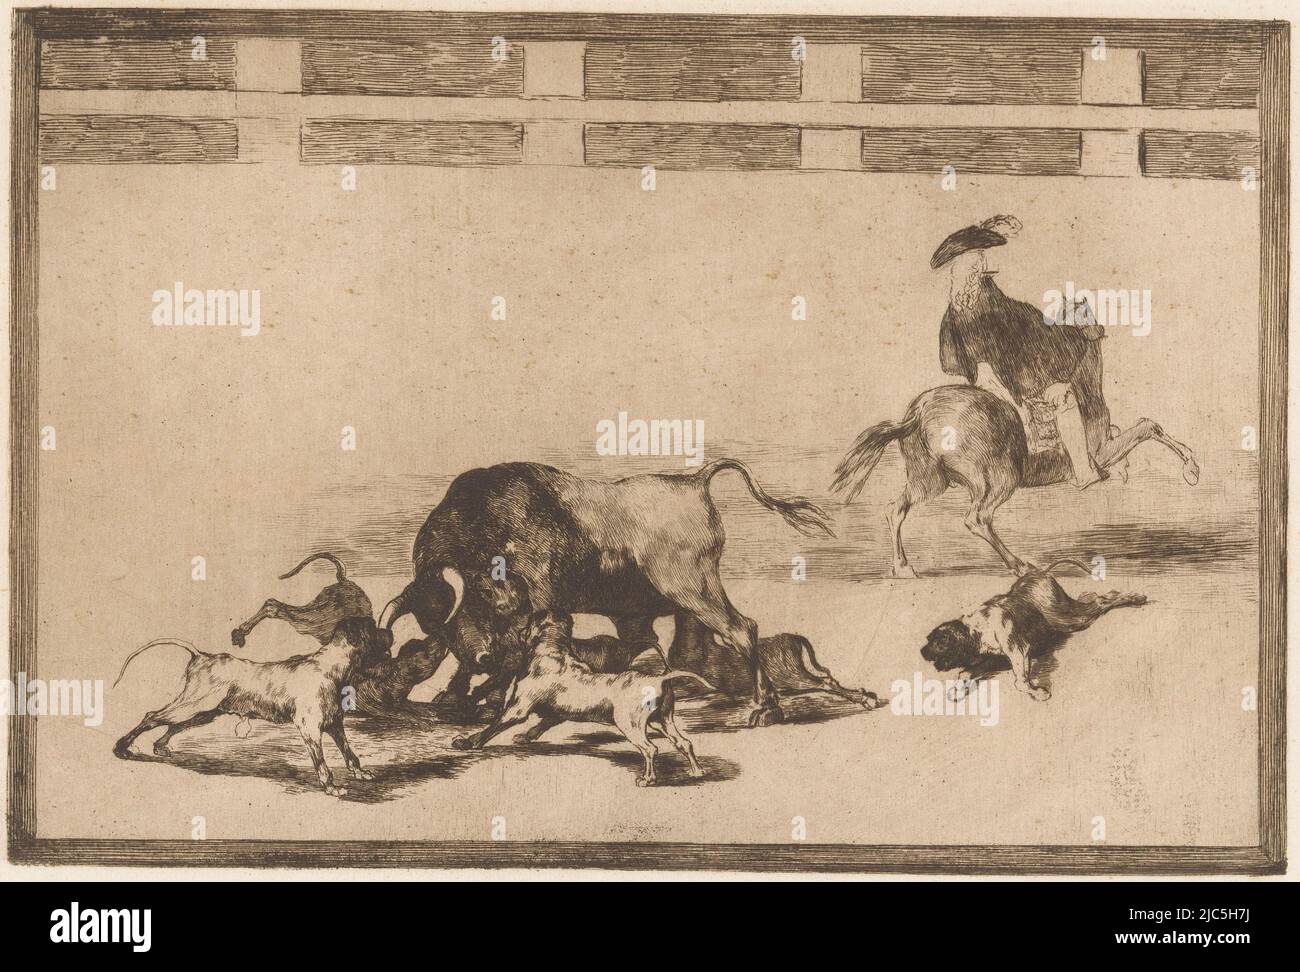 Cinq chiens attaquent un taureau dans une arène. Un chien est blessé au sol. Sur la droite un homme à cheval, vu de derrière. Numéro en haut à droite: 25., Bull attaqué par les chiens Echan perros al toro Bullfighing (titre de la série) la Taureaumachie (titre de la série) la Tauromaquia (titre de la série), imprimerie: Francisco de Goya, éditeur: Eugène Loizelet, imprimerie: Espagne, éditeur: Paris, 1876, papier, gravure, h 246 mm × l 353 mm Banque D'Images